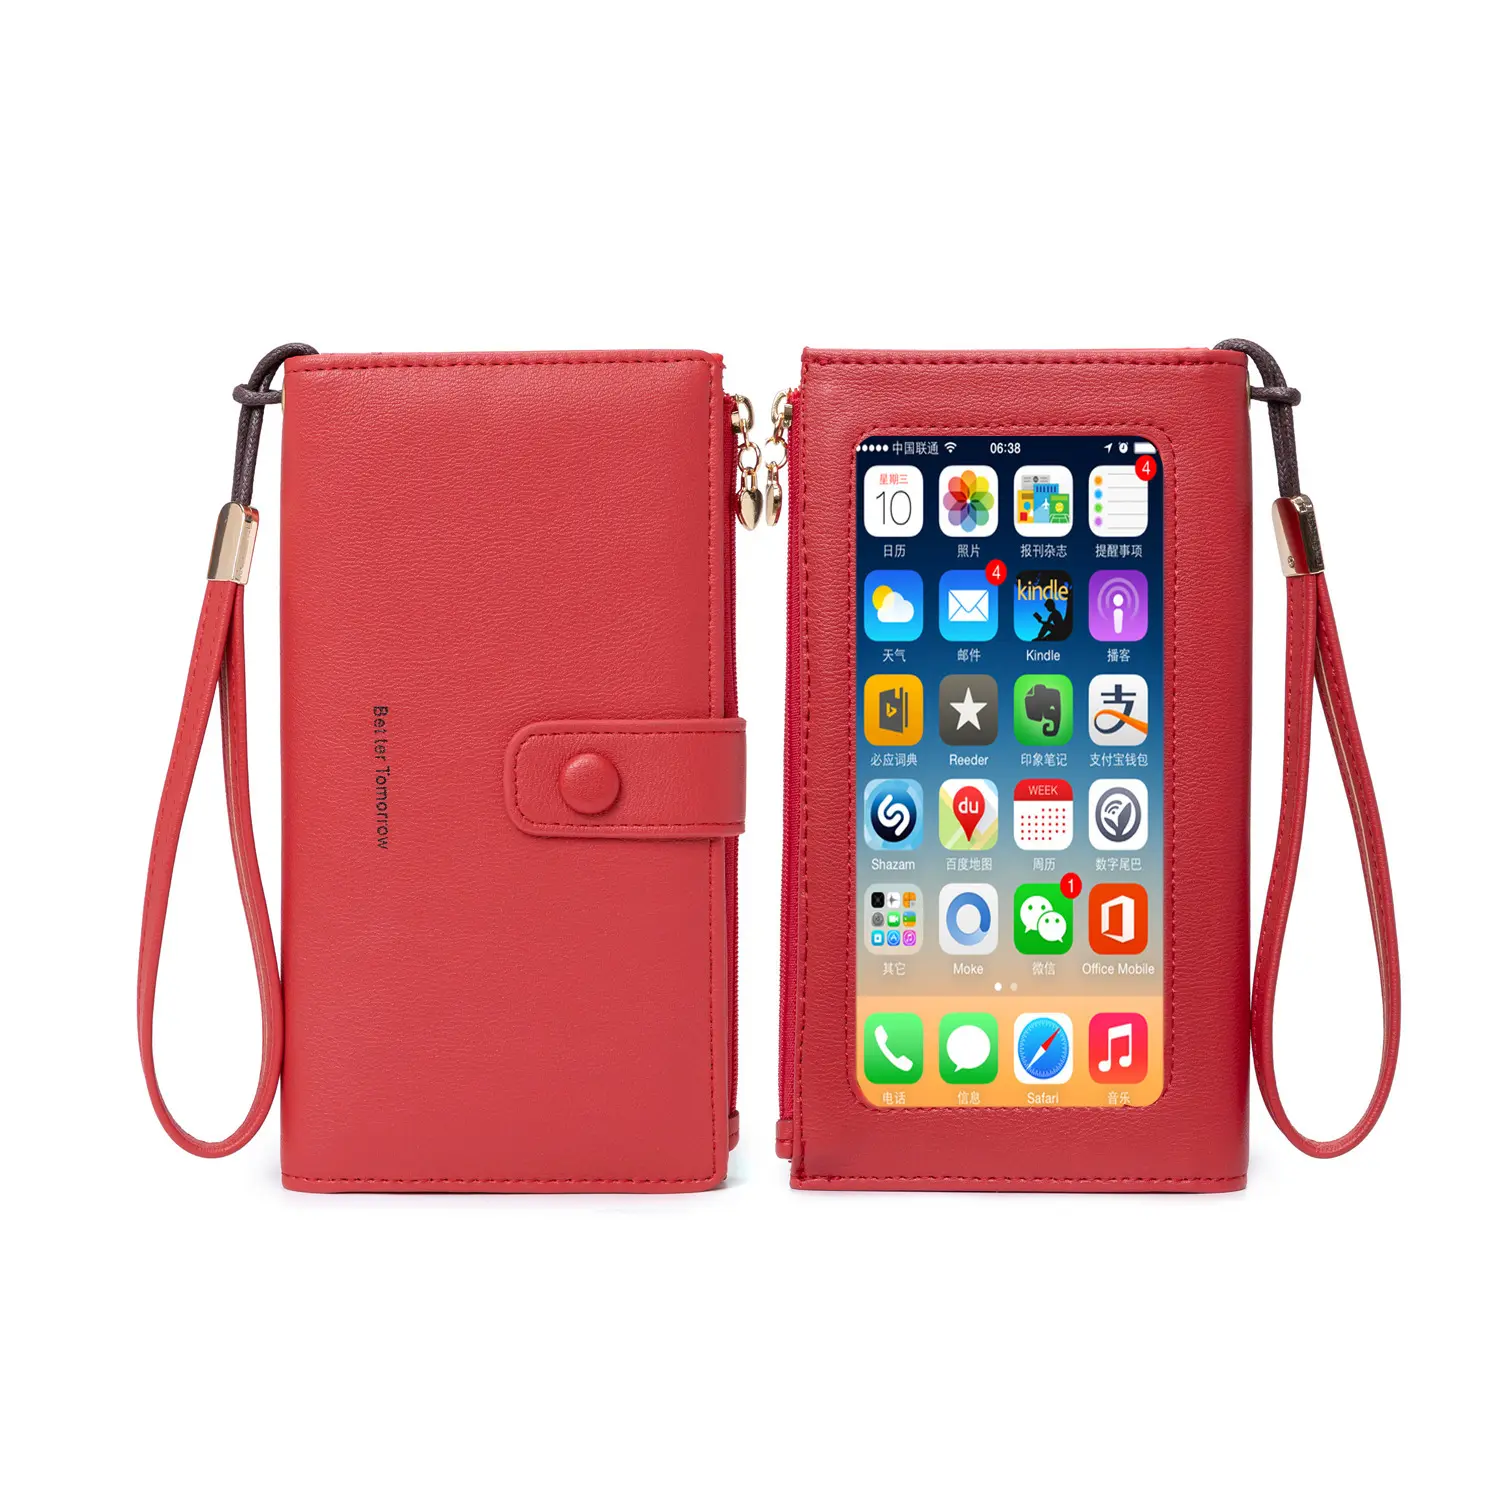 財布、カードバッグ、携帯電話バッグを統合した多機能ハンドバッグ